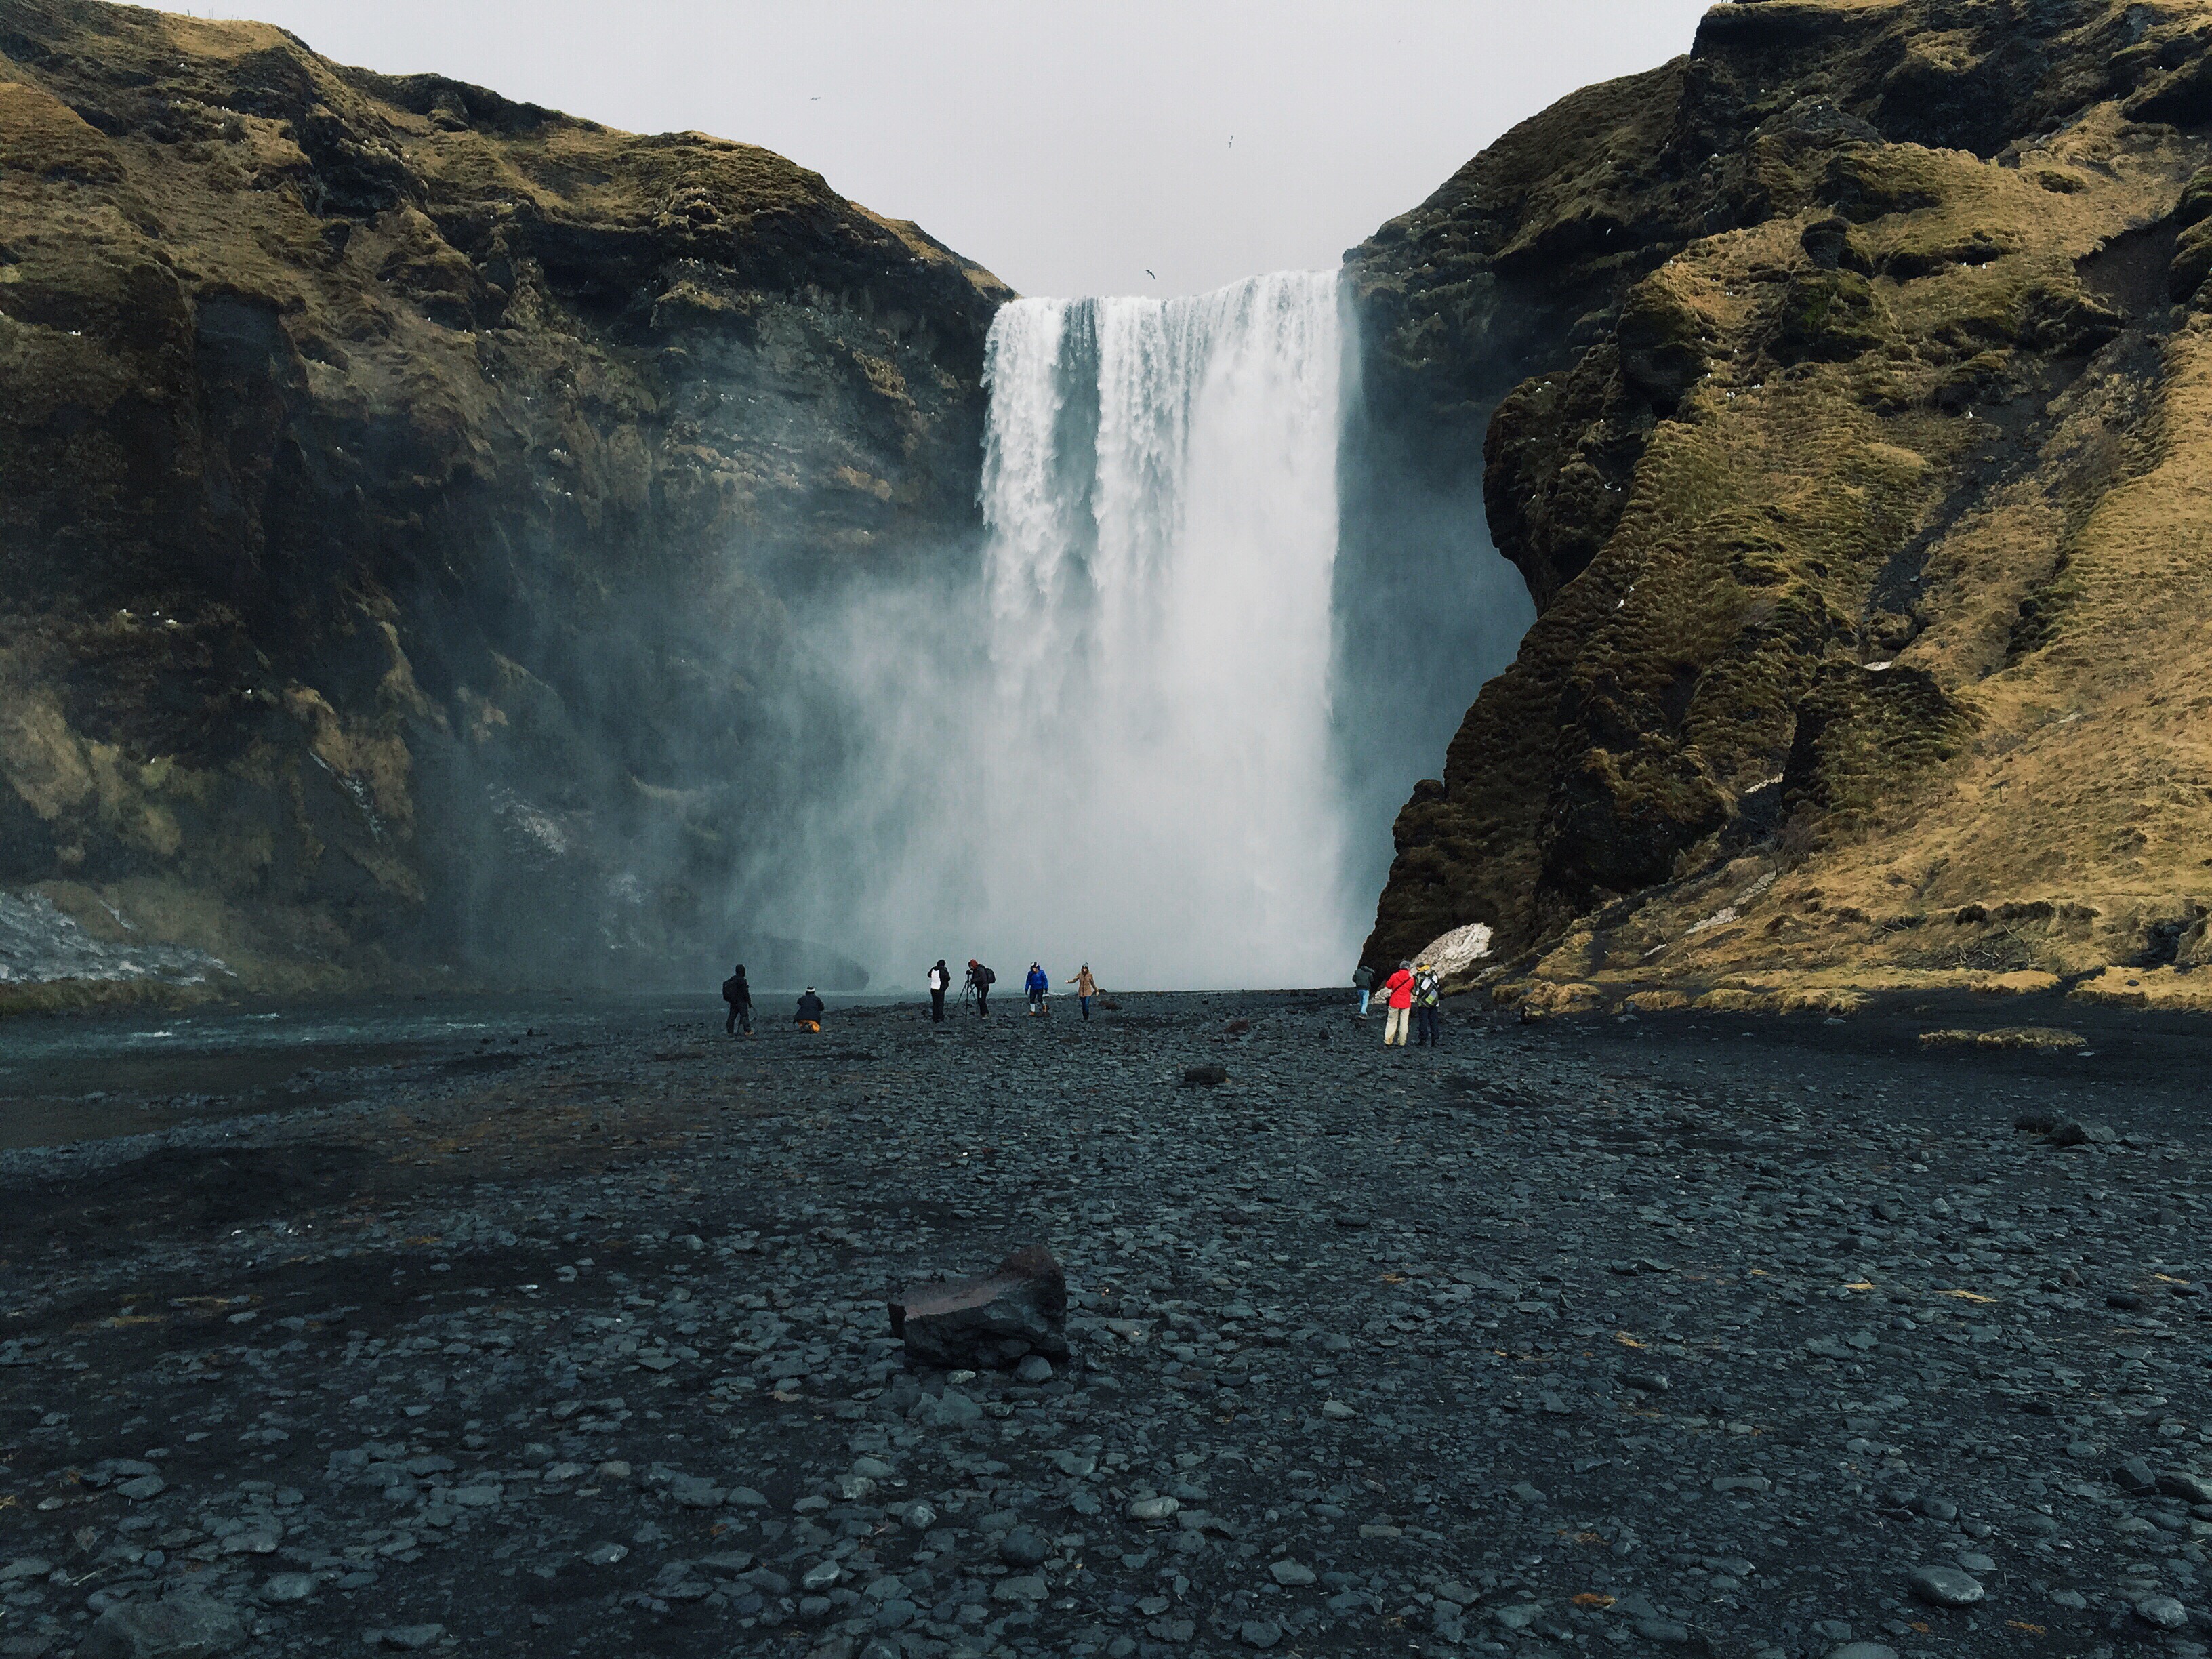 Potężny wodospad Skógafoss jest jedną z najbardziej znanych przyrodniczych atrakcji Islandii.